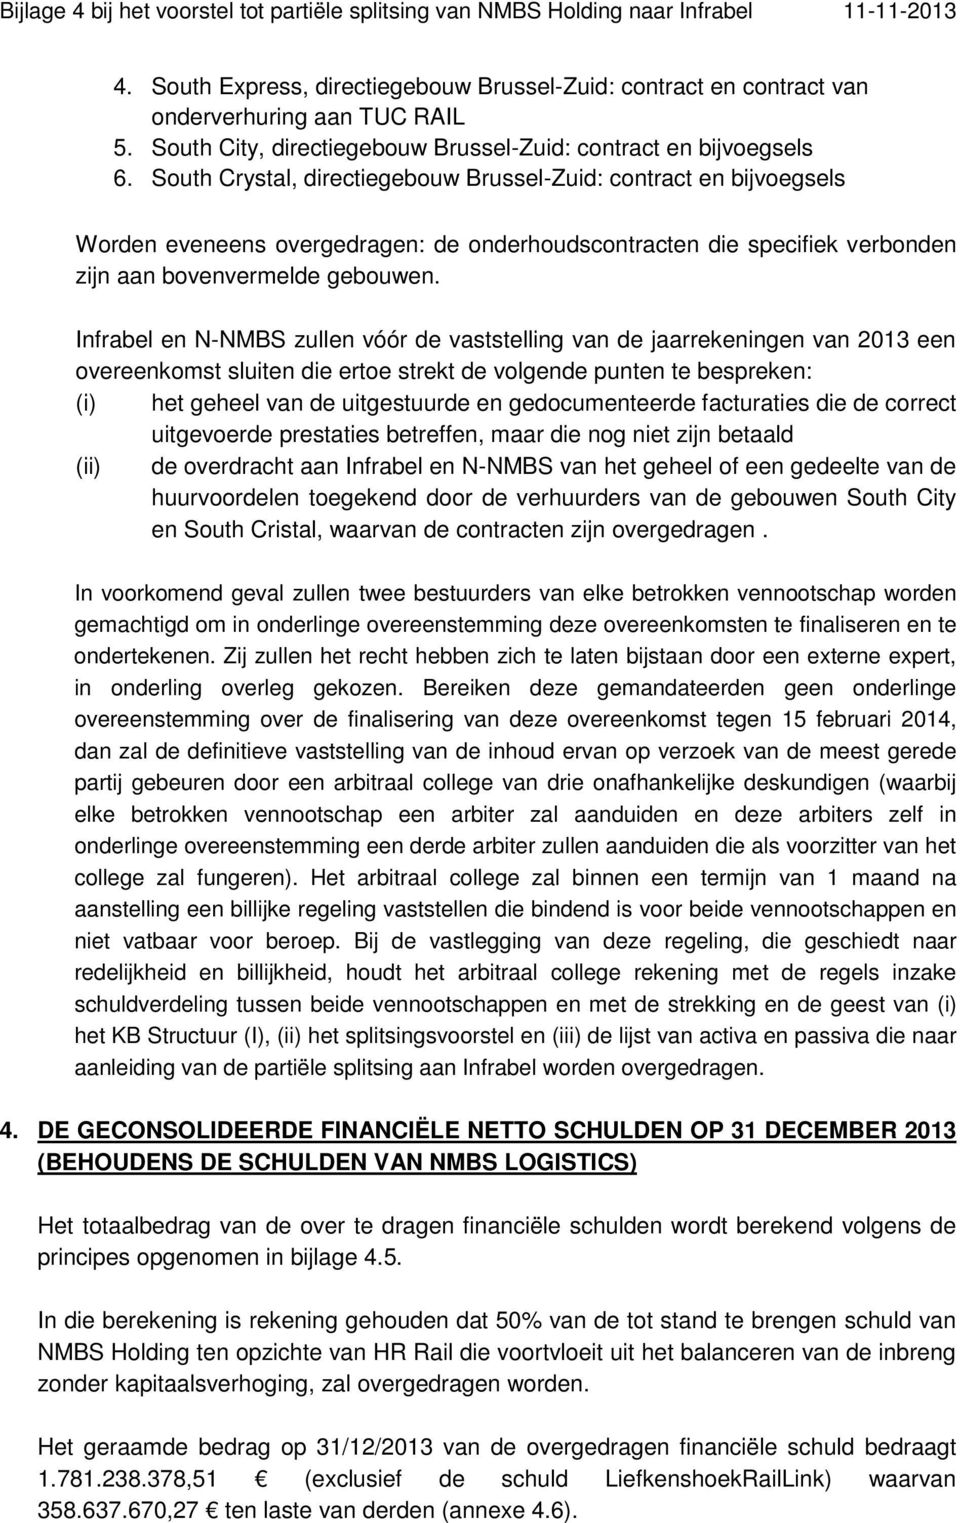 Infrabel en N-NMBS zullen vóór de vaststelling van de jaarrekeningen van 2013 een overeenkomst sluiten die ertoe strekt de volgende punten te bespreken: (i) het geheel van de uitgestuurde en